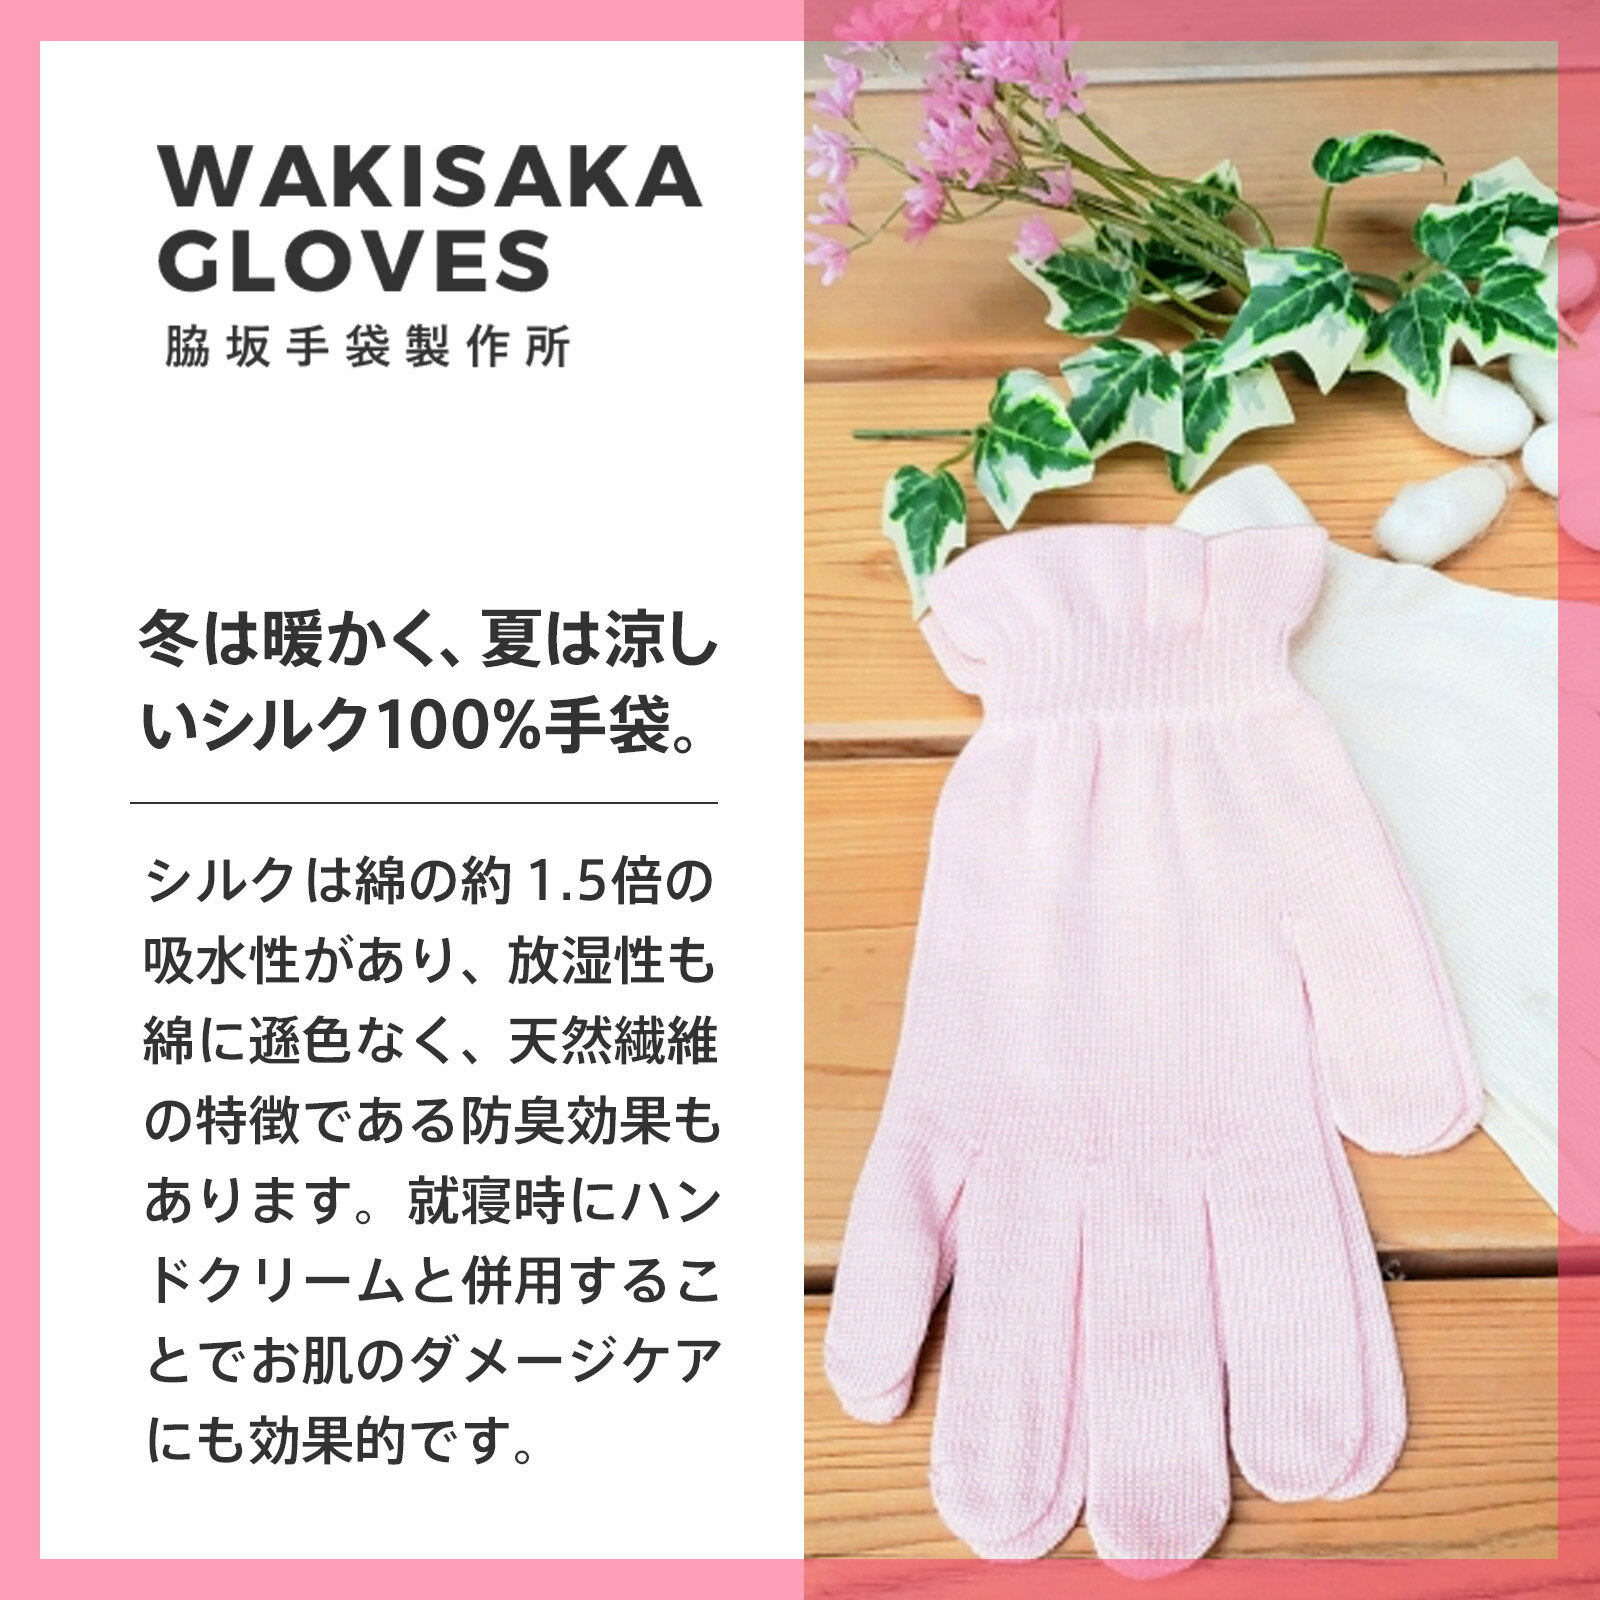 ハンドケア おやすみ ナイトケア シルク 100% 手袋 Conigilio × WAKISAKA GLOVES 「指先まで美しく」日本製 保温 乾燥 UVカット 冷え性 手荒れ あかぎれ ひびわれ 対策 ハンドクリームと合わせえて使える手袋 3